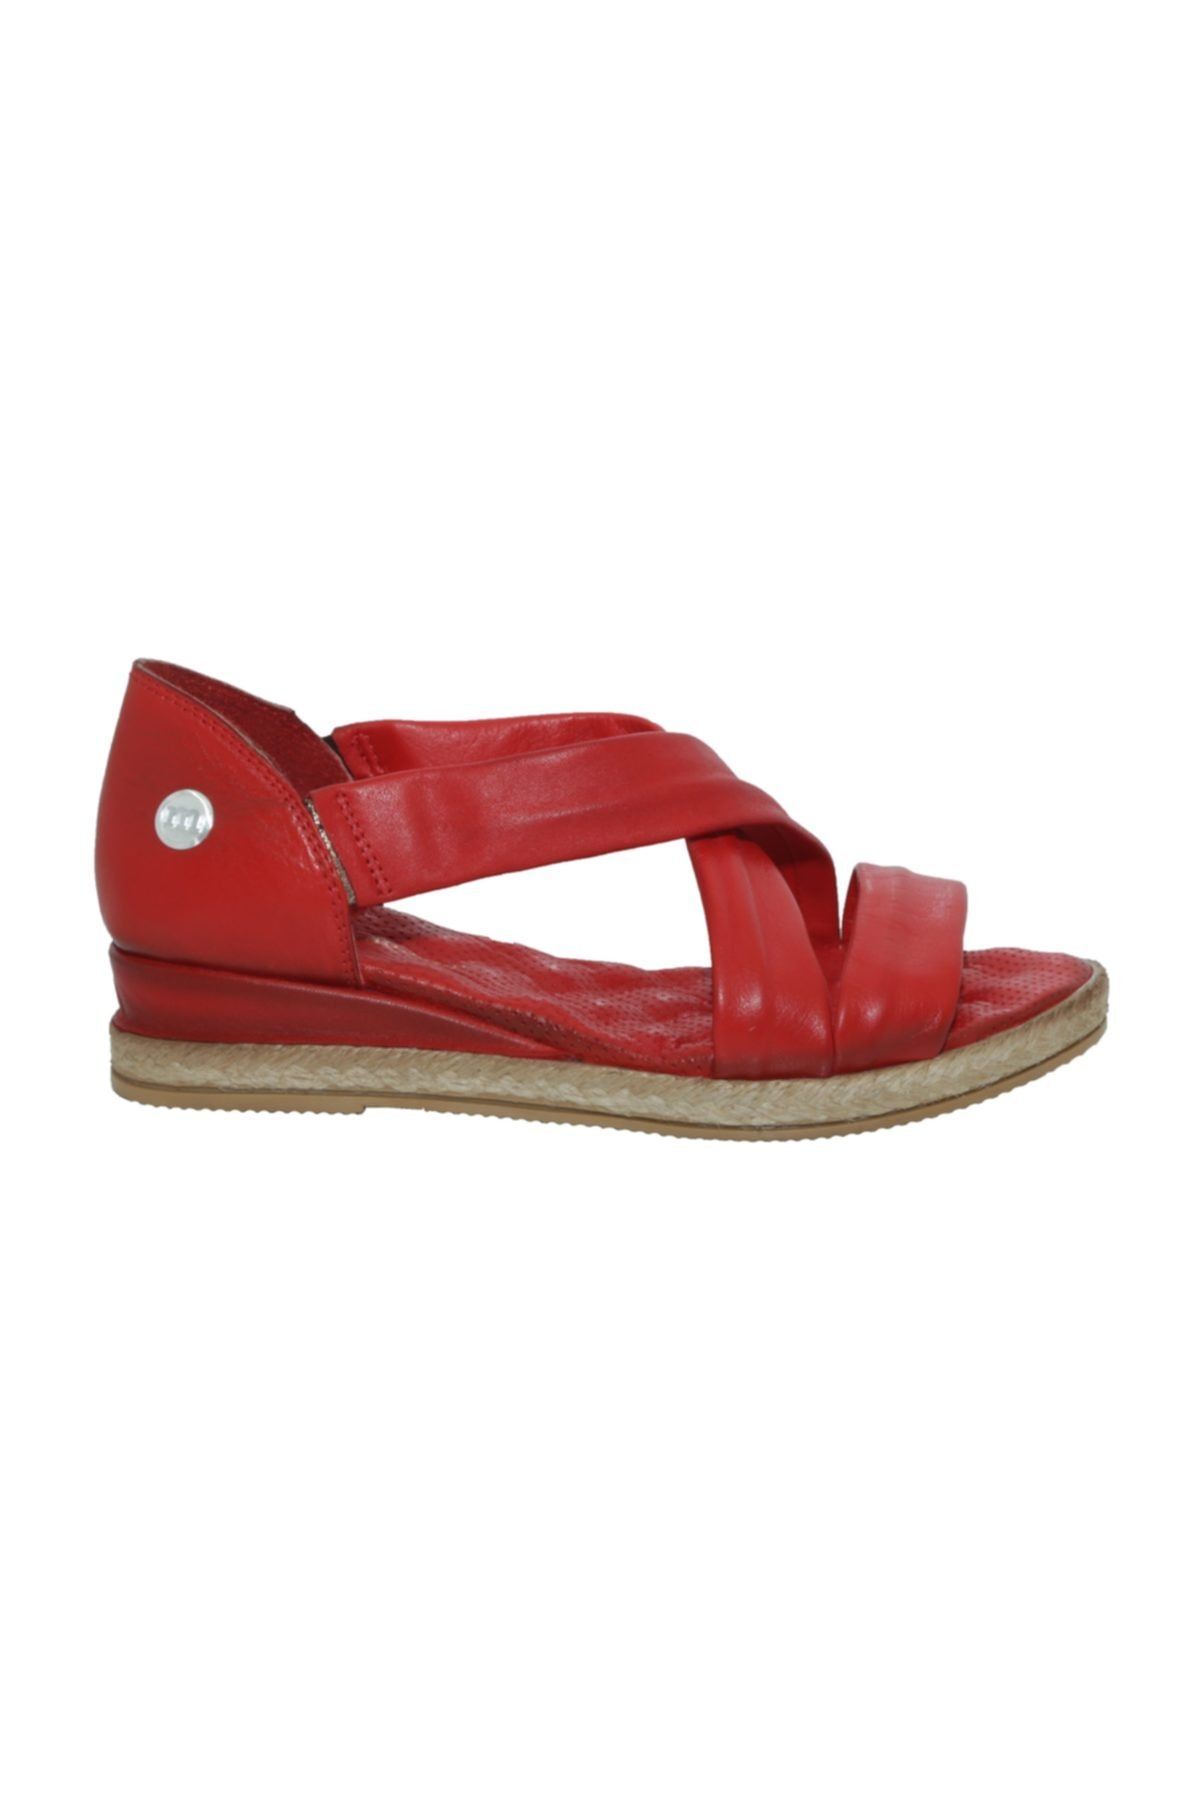 Mammamia Kırmızı Deri Casual Kadın Sandalet D20ys1580